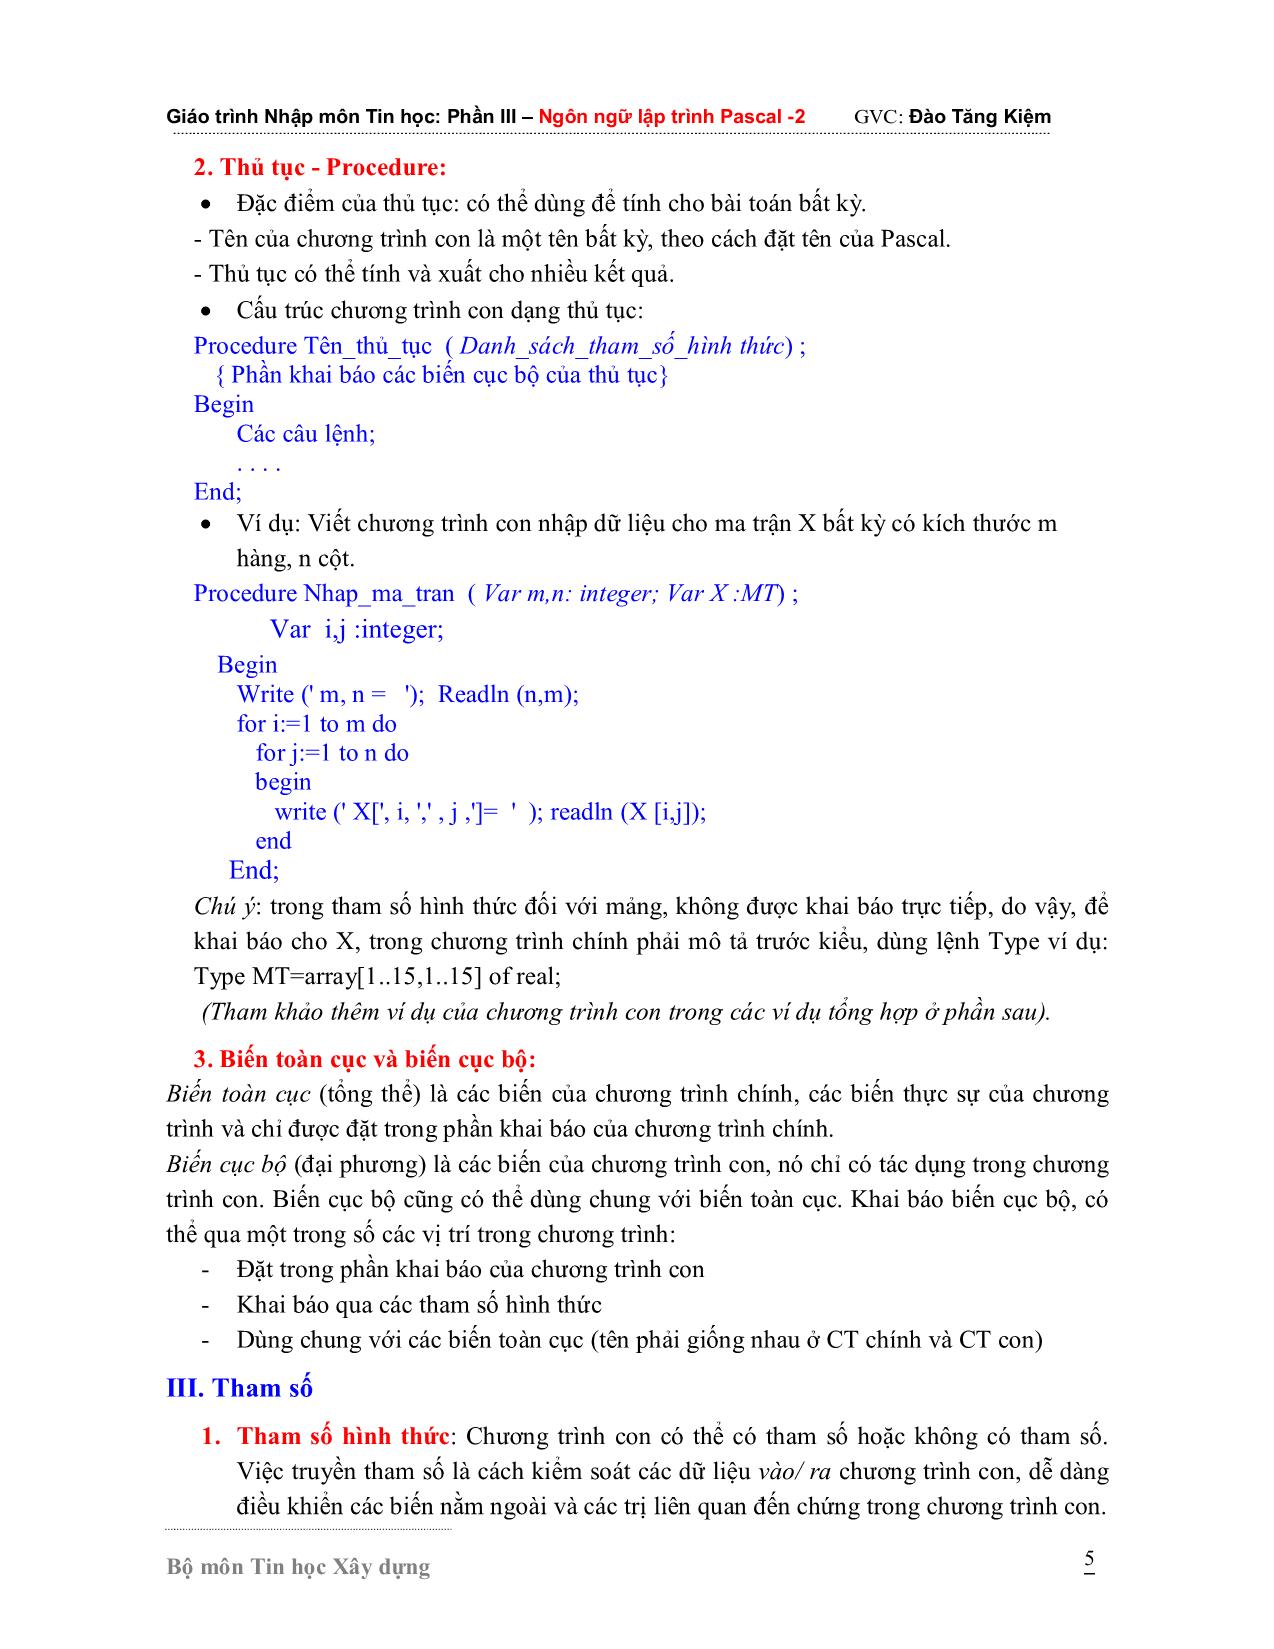 Giáo trình Nhập môn Tin học - Phần 3: Ngôn ngữ lập trình Pascal 2 trang 5